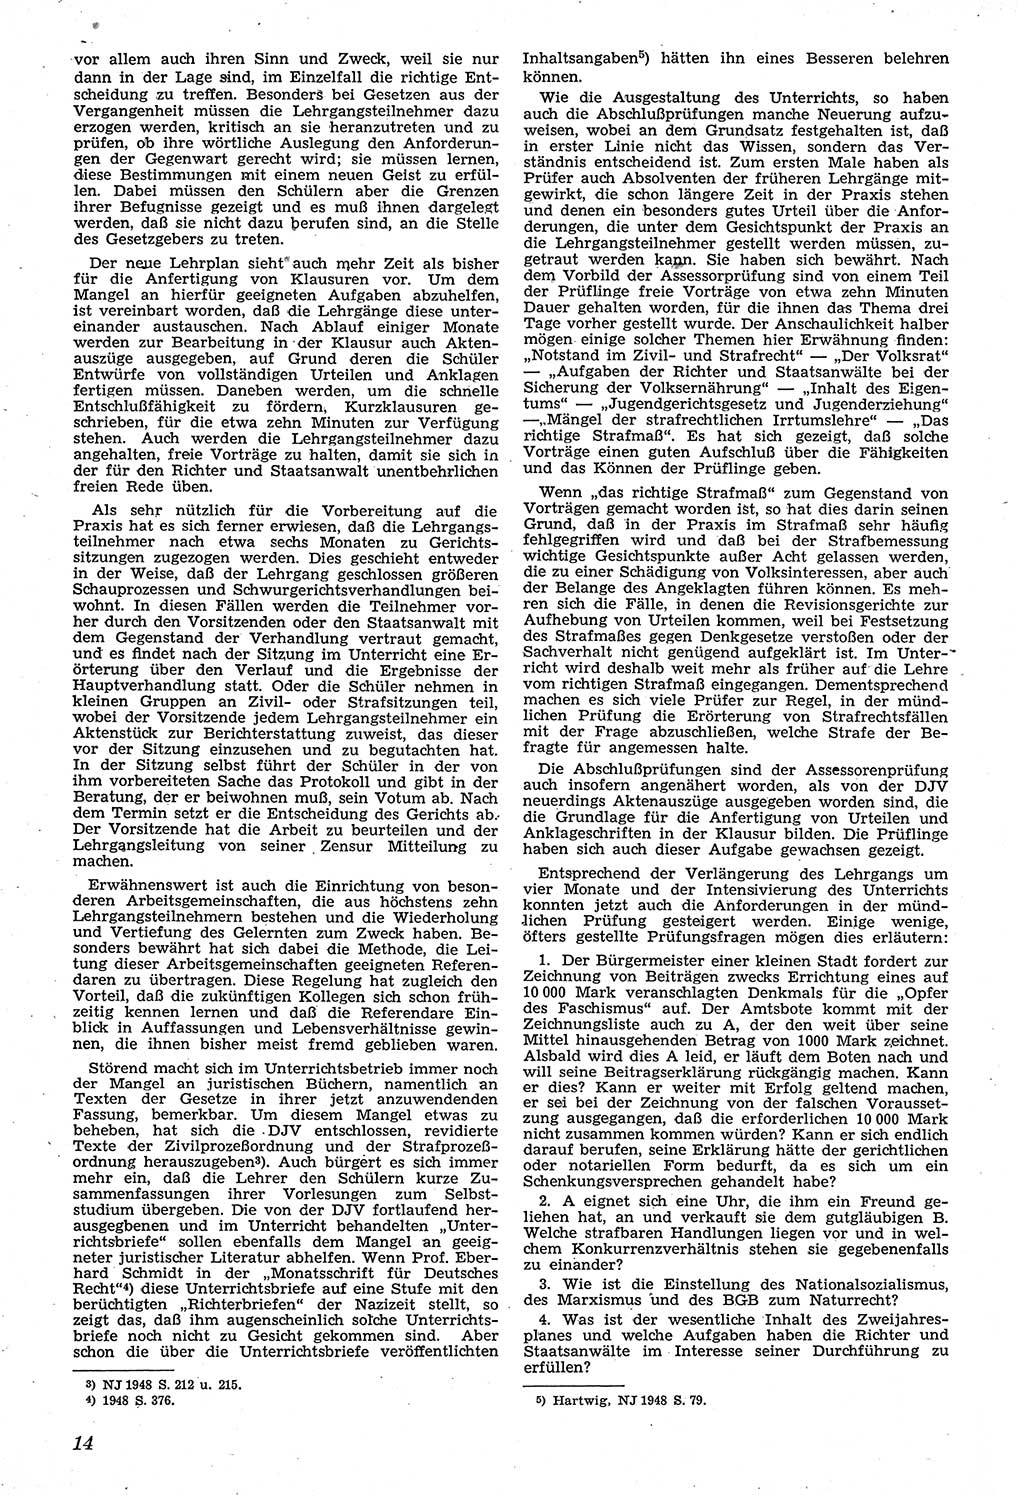 Neue Justiz (NJ), Zeitschrift für Recht und Rechtswissenschaft [Sowjetische Besatzungszone (SBZ) Deutschland, Deutsche Demokratische Republik (DDR)], 3. Jahrgang 1949, Seite 14 (NJ SBZ Dtl. DDR 1949, S. 14)